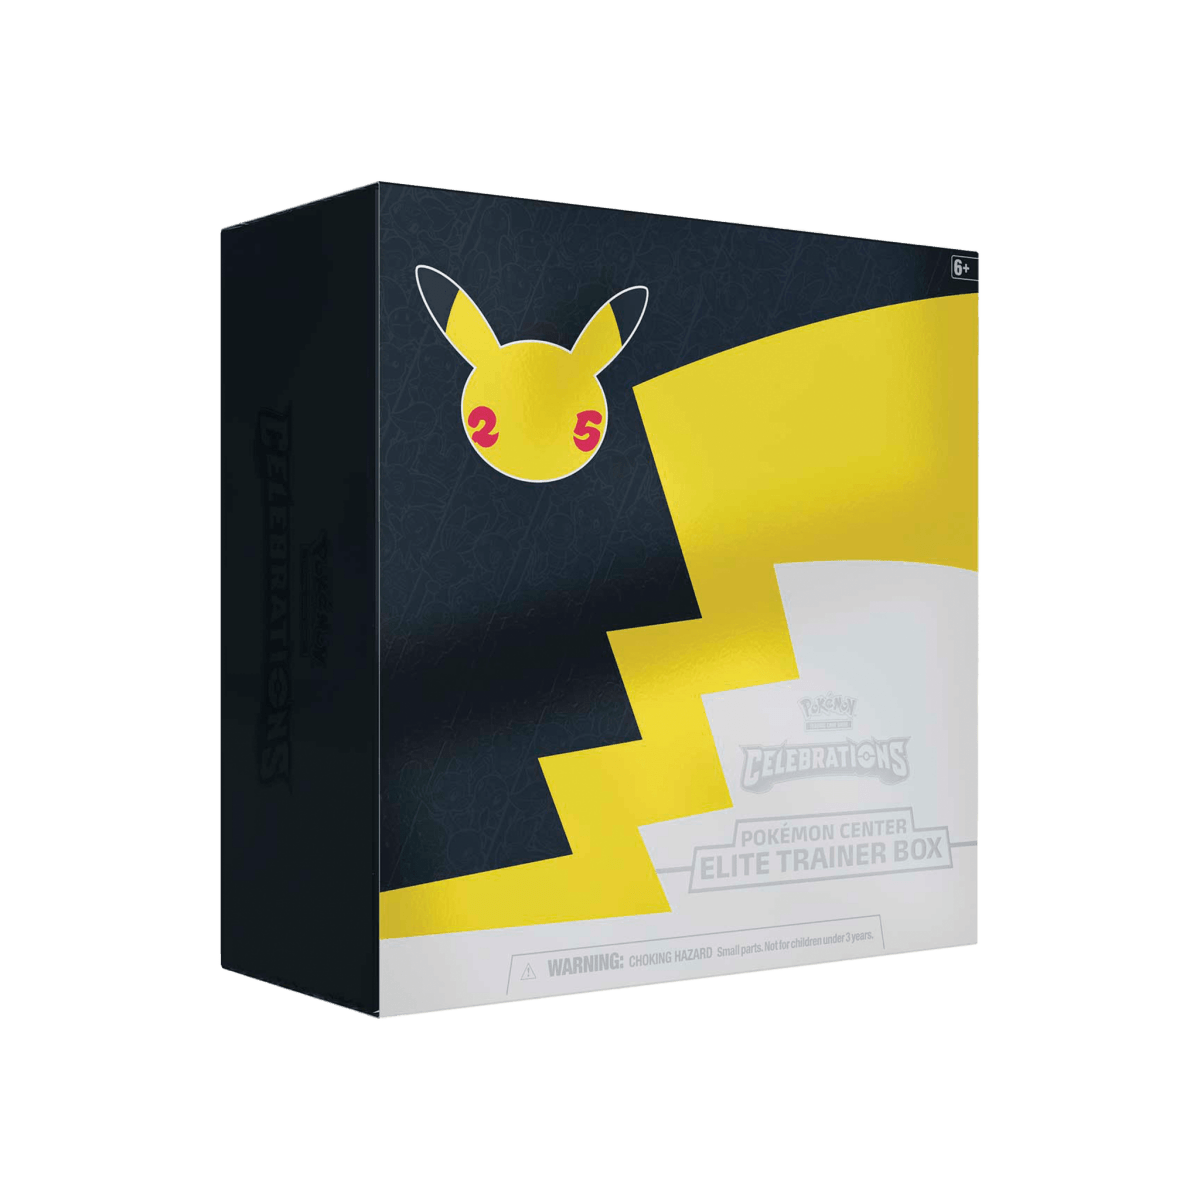 Pokémon TCG - Celebrations Pokémon Center Elite Trainer Box - Cardmaniac.ch